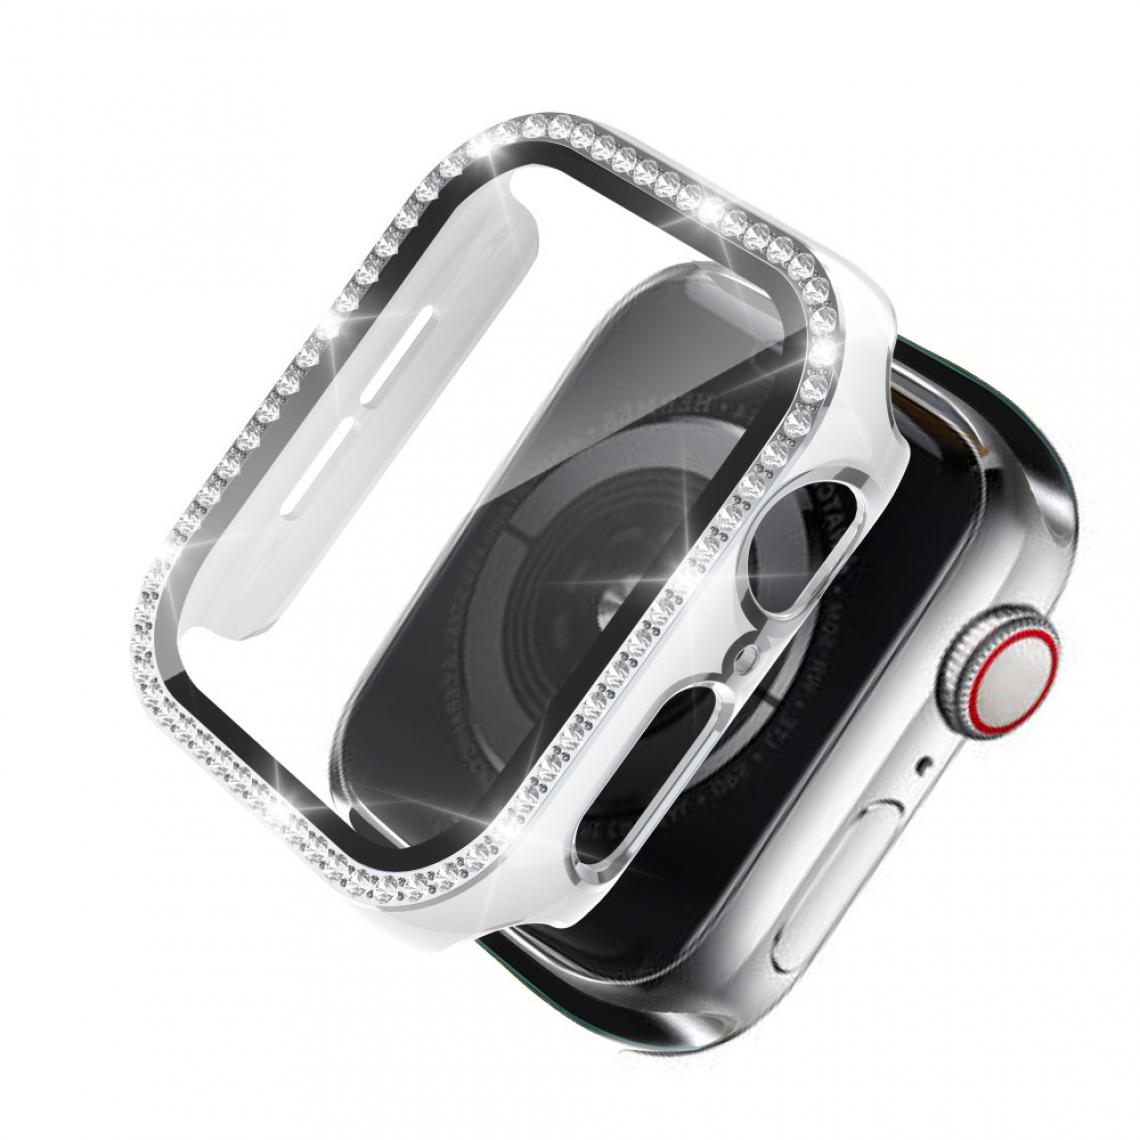 Other - Coque en TPU Cristal de strass de galvanoplastie bicolore blanc/argent pour votre Apple Watch 4/5/6/SE 44mm - Accessoires bracelet connecté